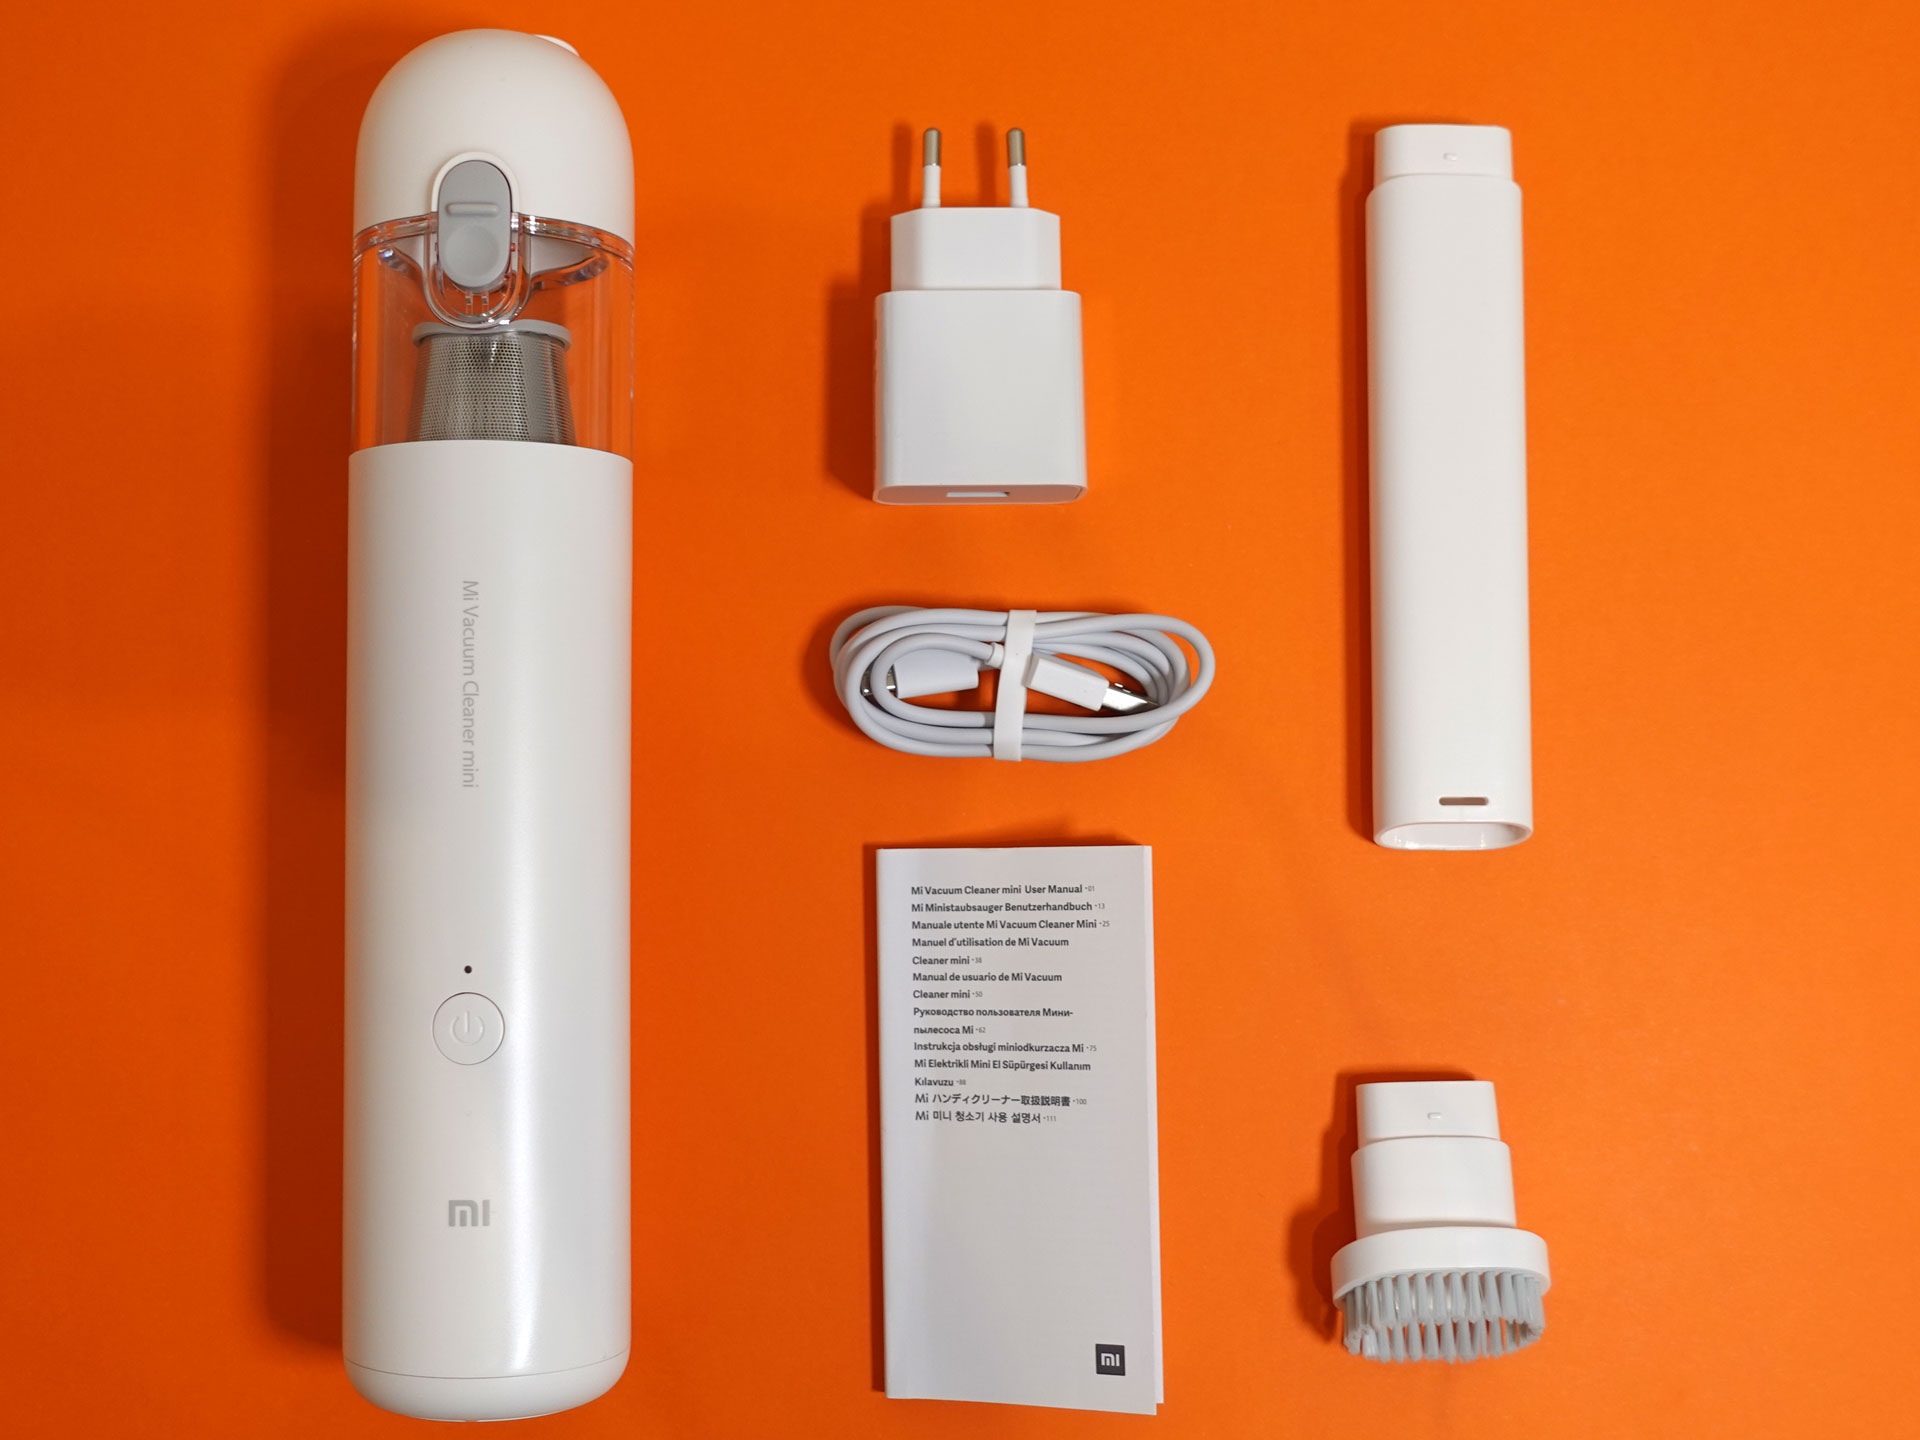 Для труднодоступных мест. Обзор мини-пылесоса Xiaomi Vacuum Cleaner Mini /  Комфортный дом и бытовая техника / iXBT Live